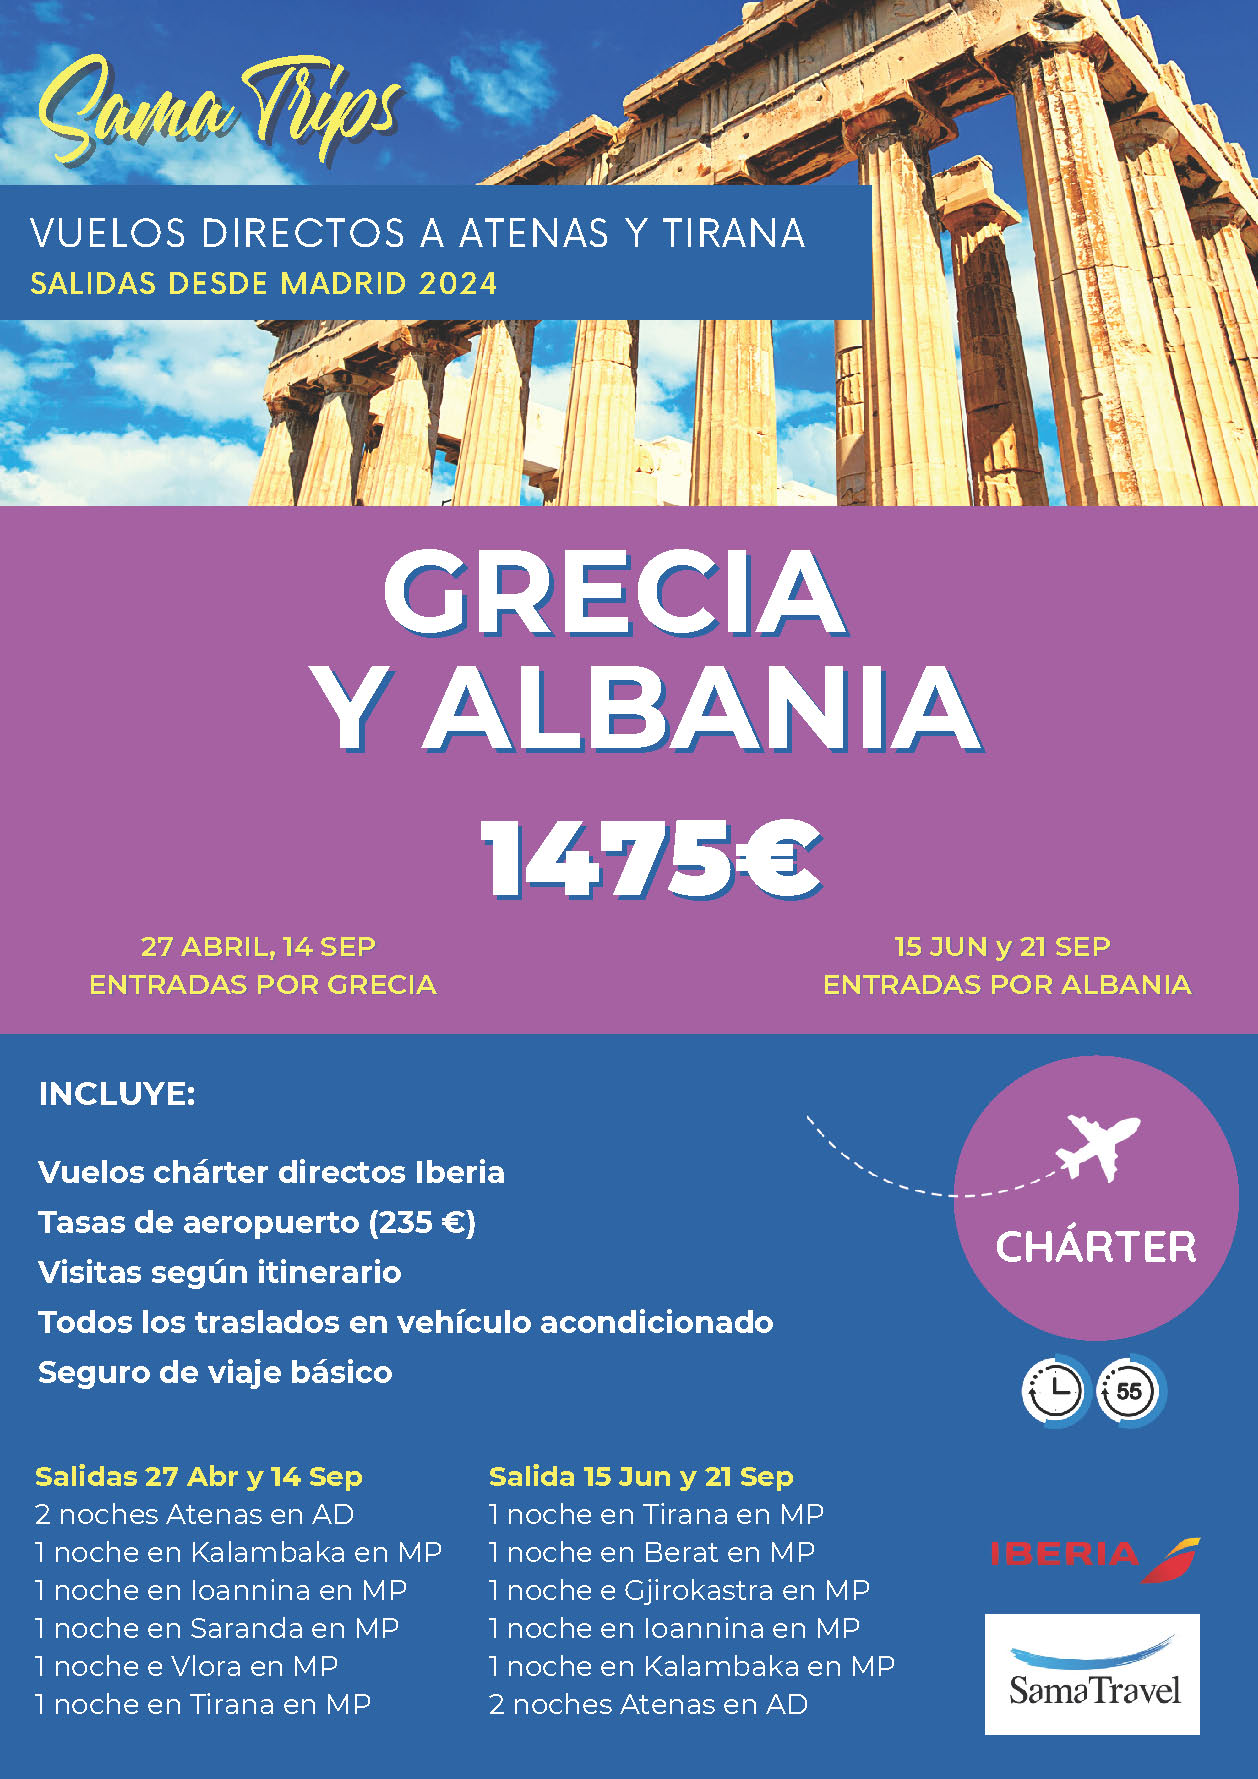 Oferta Sama Travel circuito Grecia y Albania 8 dias salidas Abril Junio Septiembre 2024 vuelo directo desde Madrid